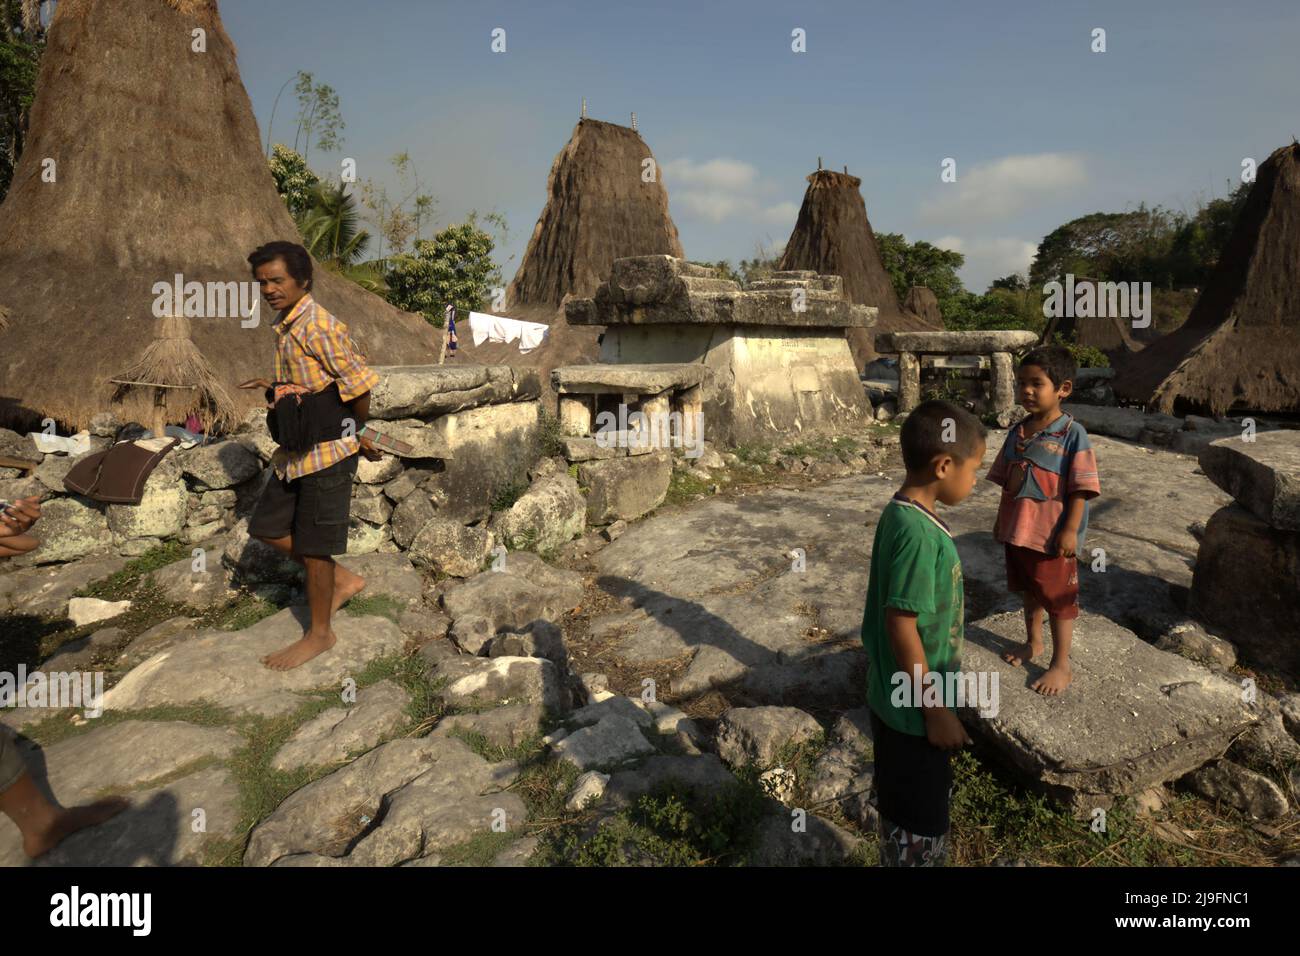 Un uomo che passa accanto ai bambini che giocano in uno spazio aperto dove si vedono tombe megalitiche nel villaggio tradizionale di Praijing a Tebara, Waikabubak, West Sumba, East Nusa Tenggara, Indonesia. Foto Stock